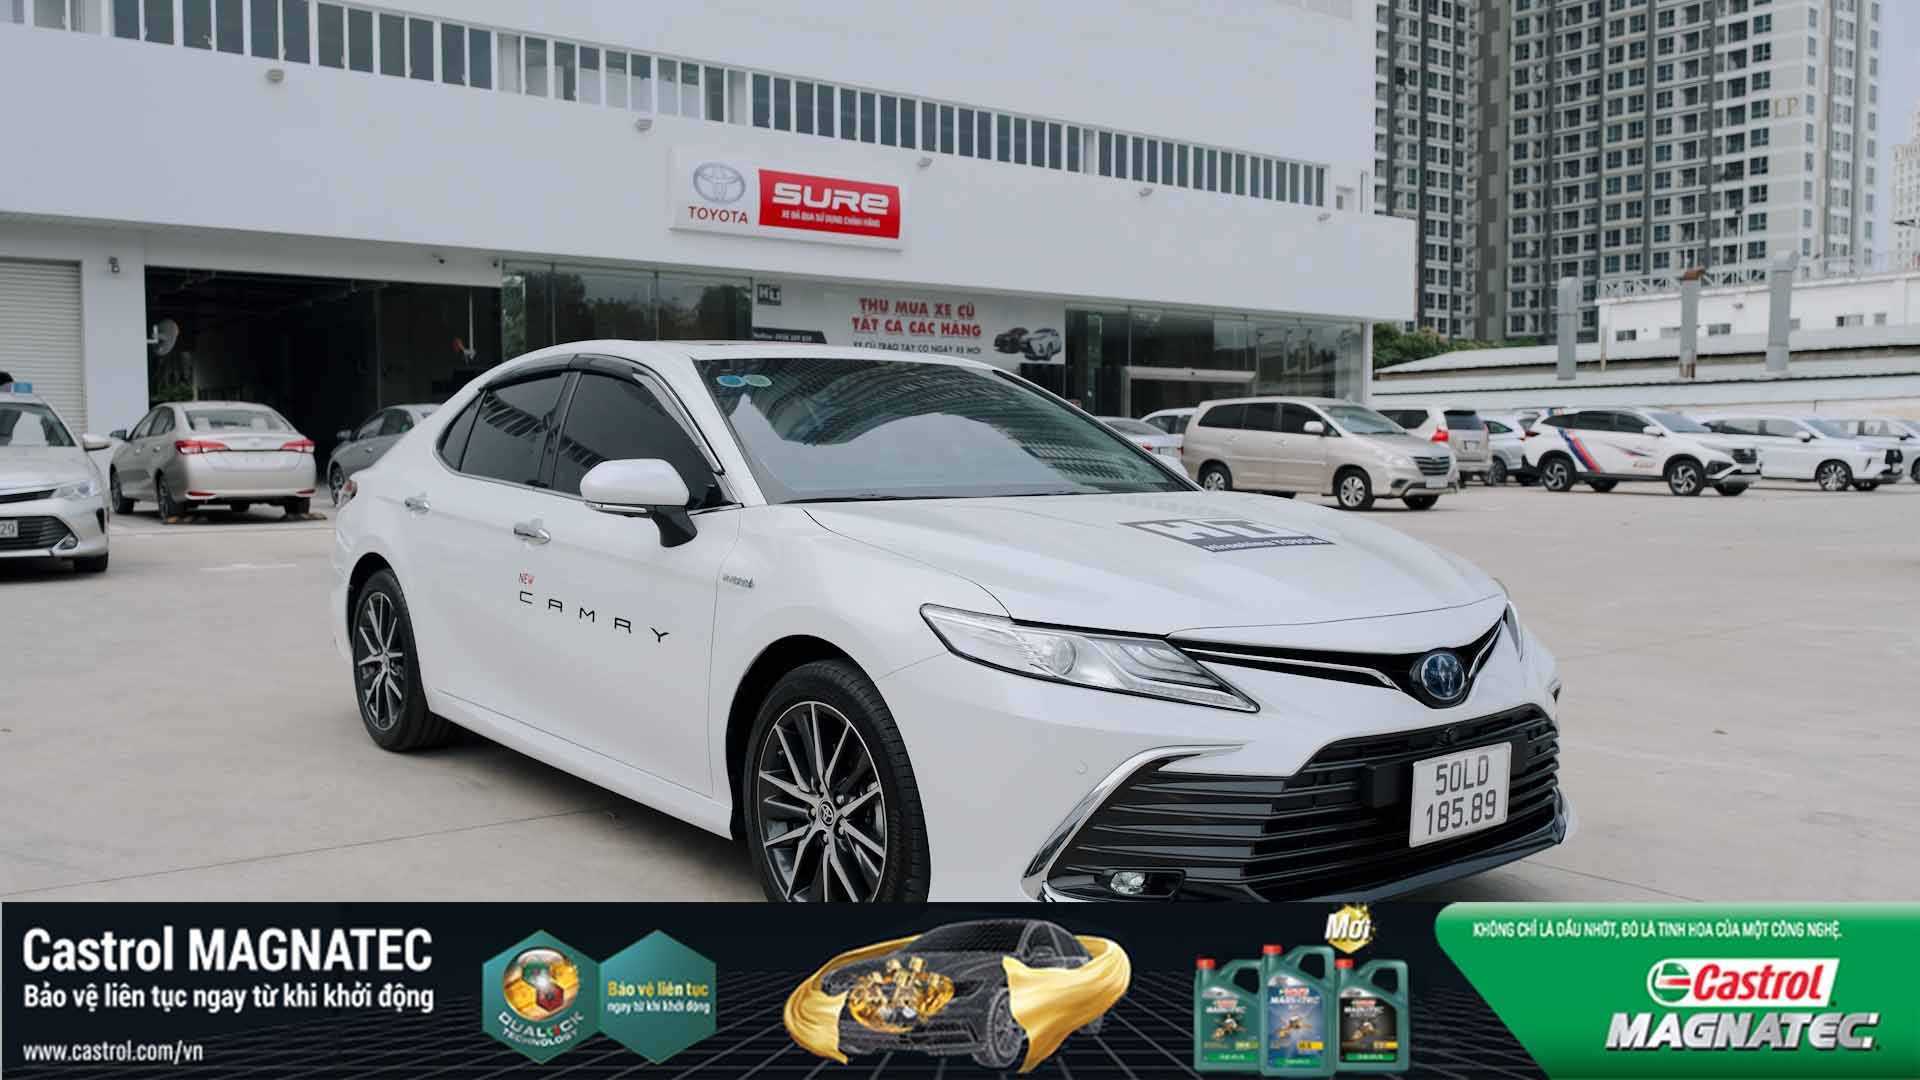 Toyota Camry 2022 trình làng thị trường Việt Nam giá từ 105 tỷ đồng  Ôtô Xe máy  Vietnam VietnamPlus